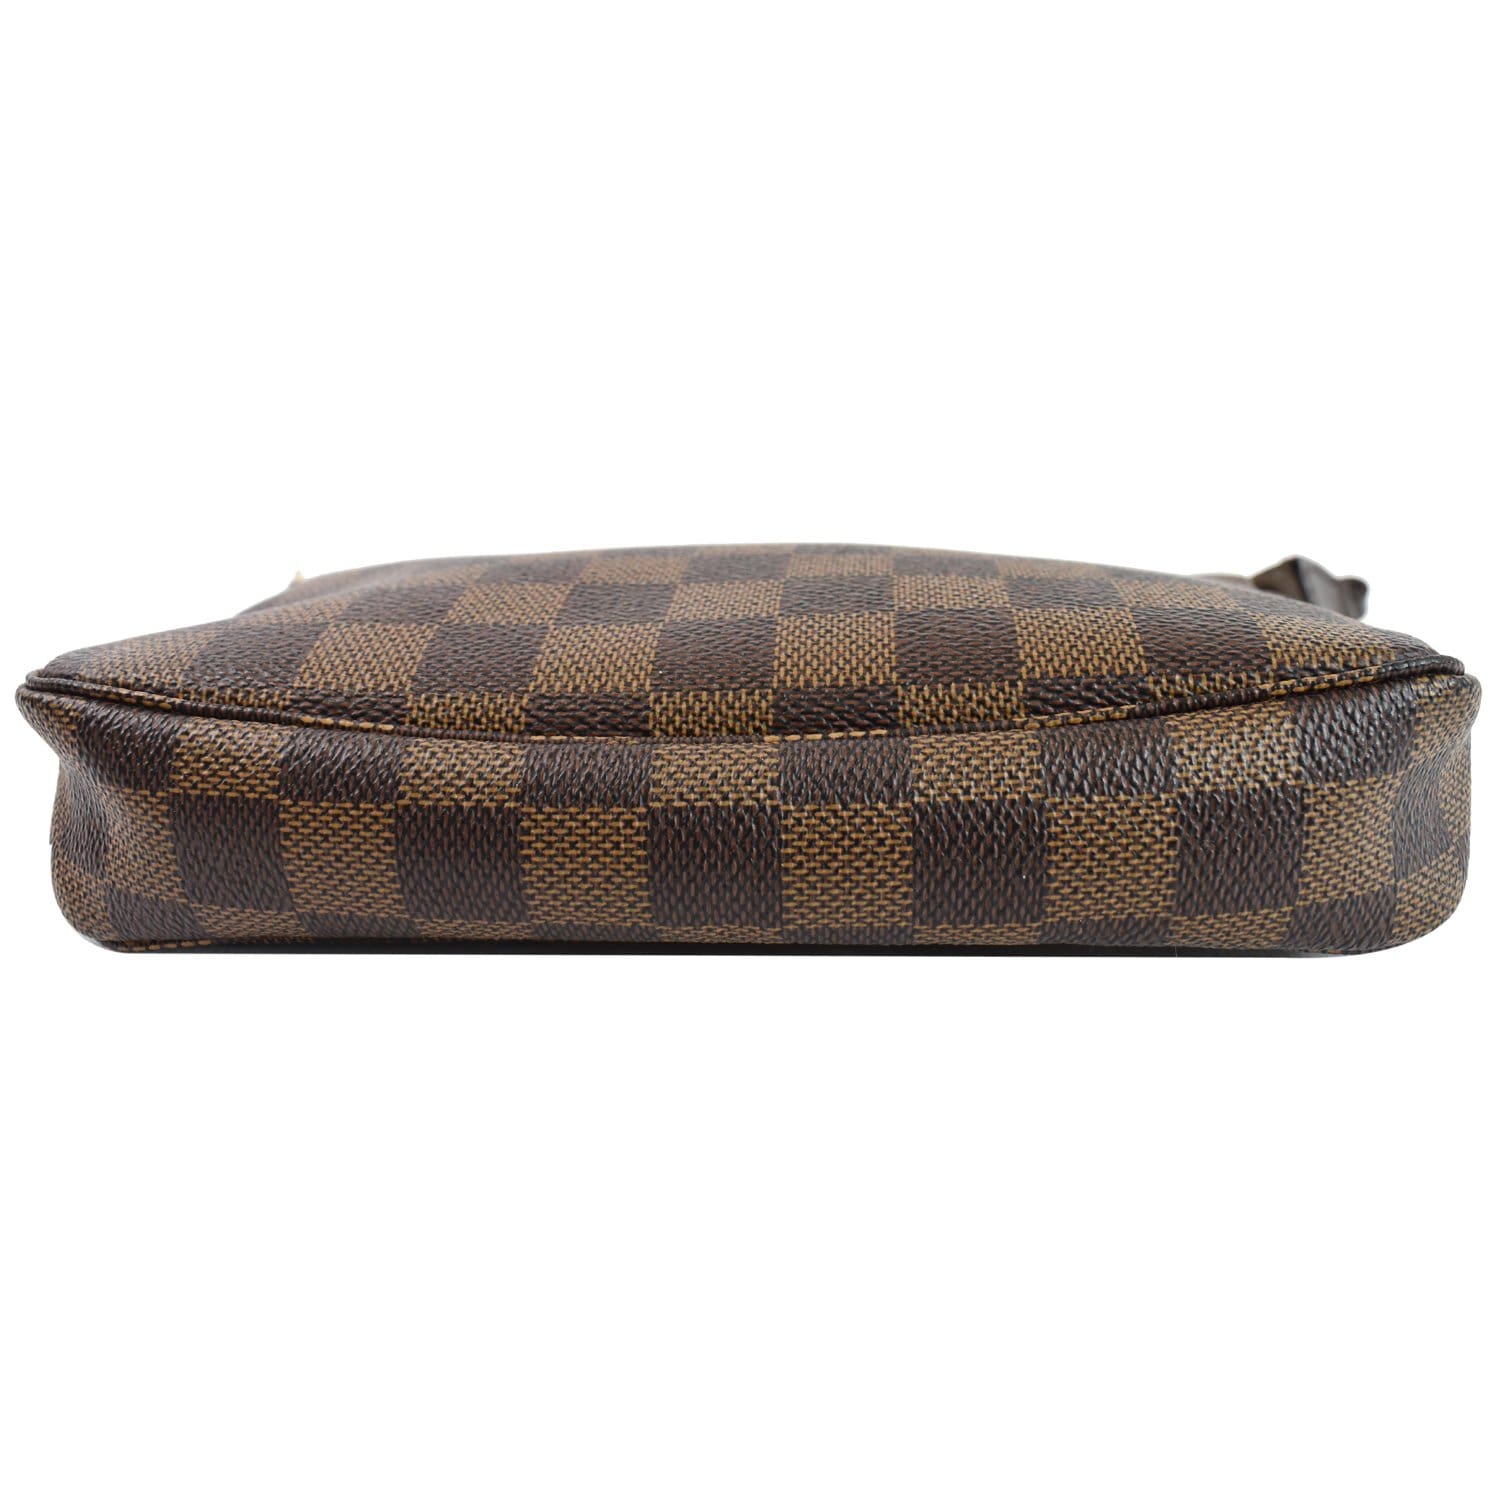 Louis Vuitton Damier Ebene Pochette Accessoires - Brown Mini Bags